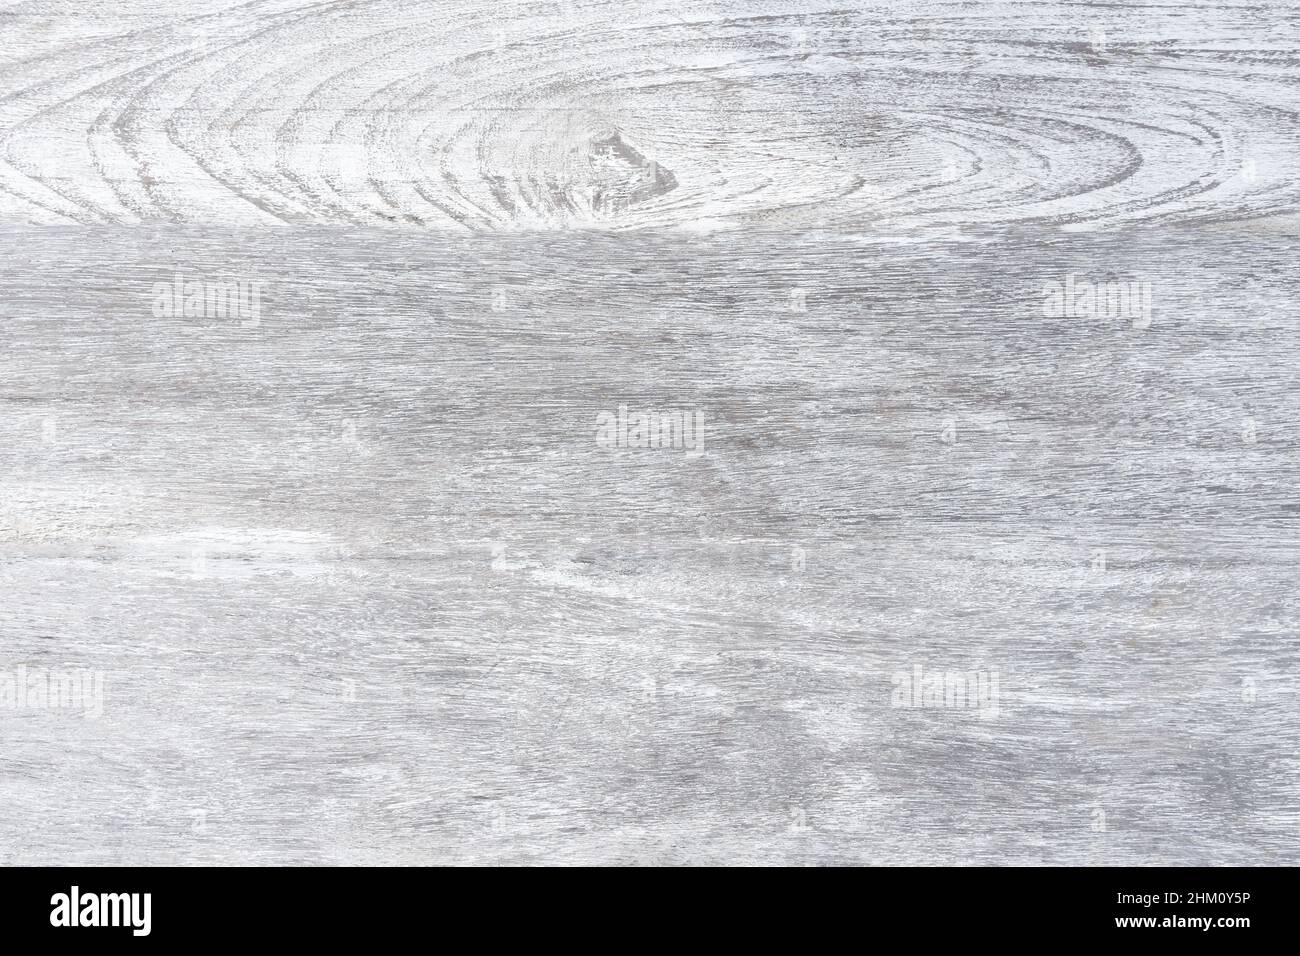 Weiße Korn Luxus Home Tisch Holz oben oben Ansicht Konzept sauber Tischplatte Formica Schreibtisch, Zähler Hintergrund Textur, rustikal schlichten Seitenverkleidungs Marmor bacgr Stockfoto